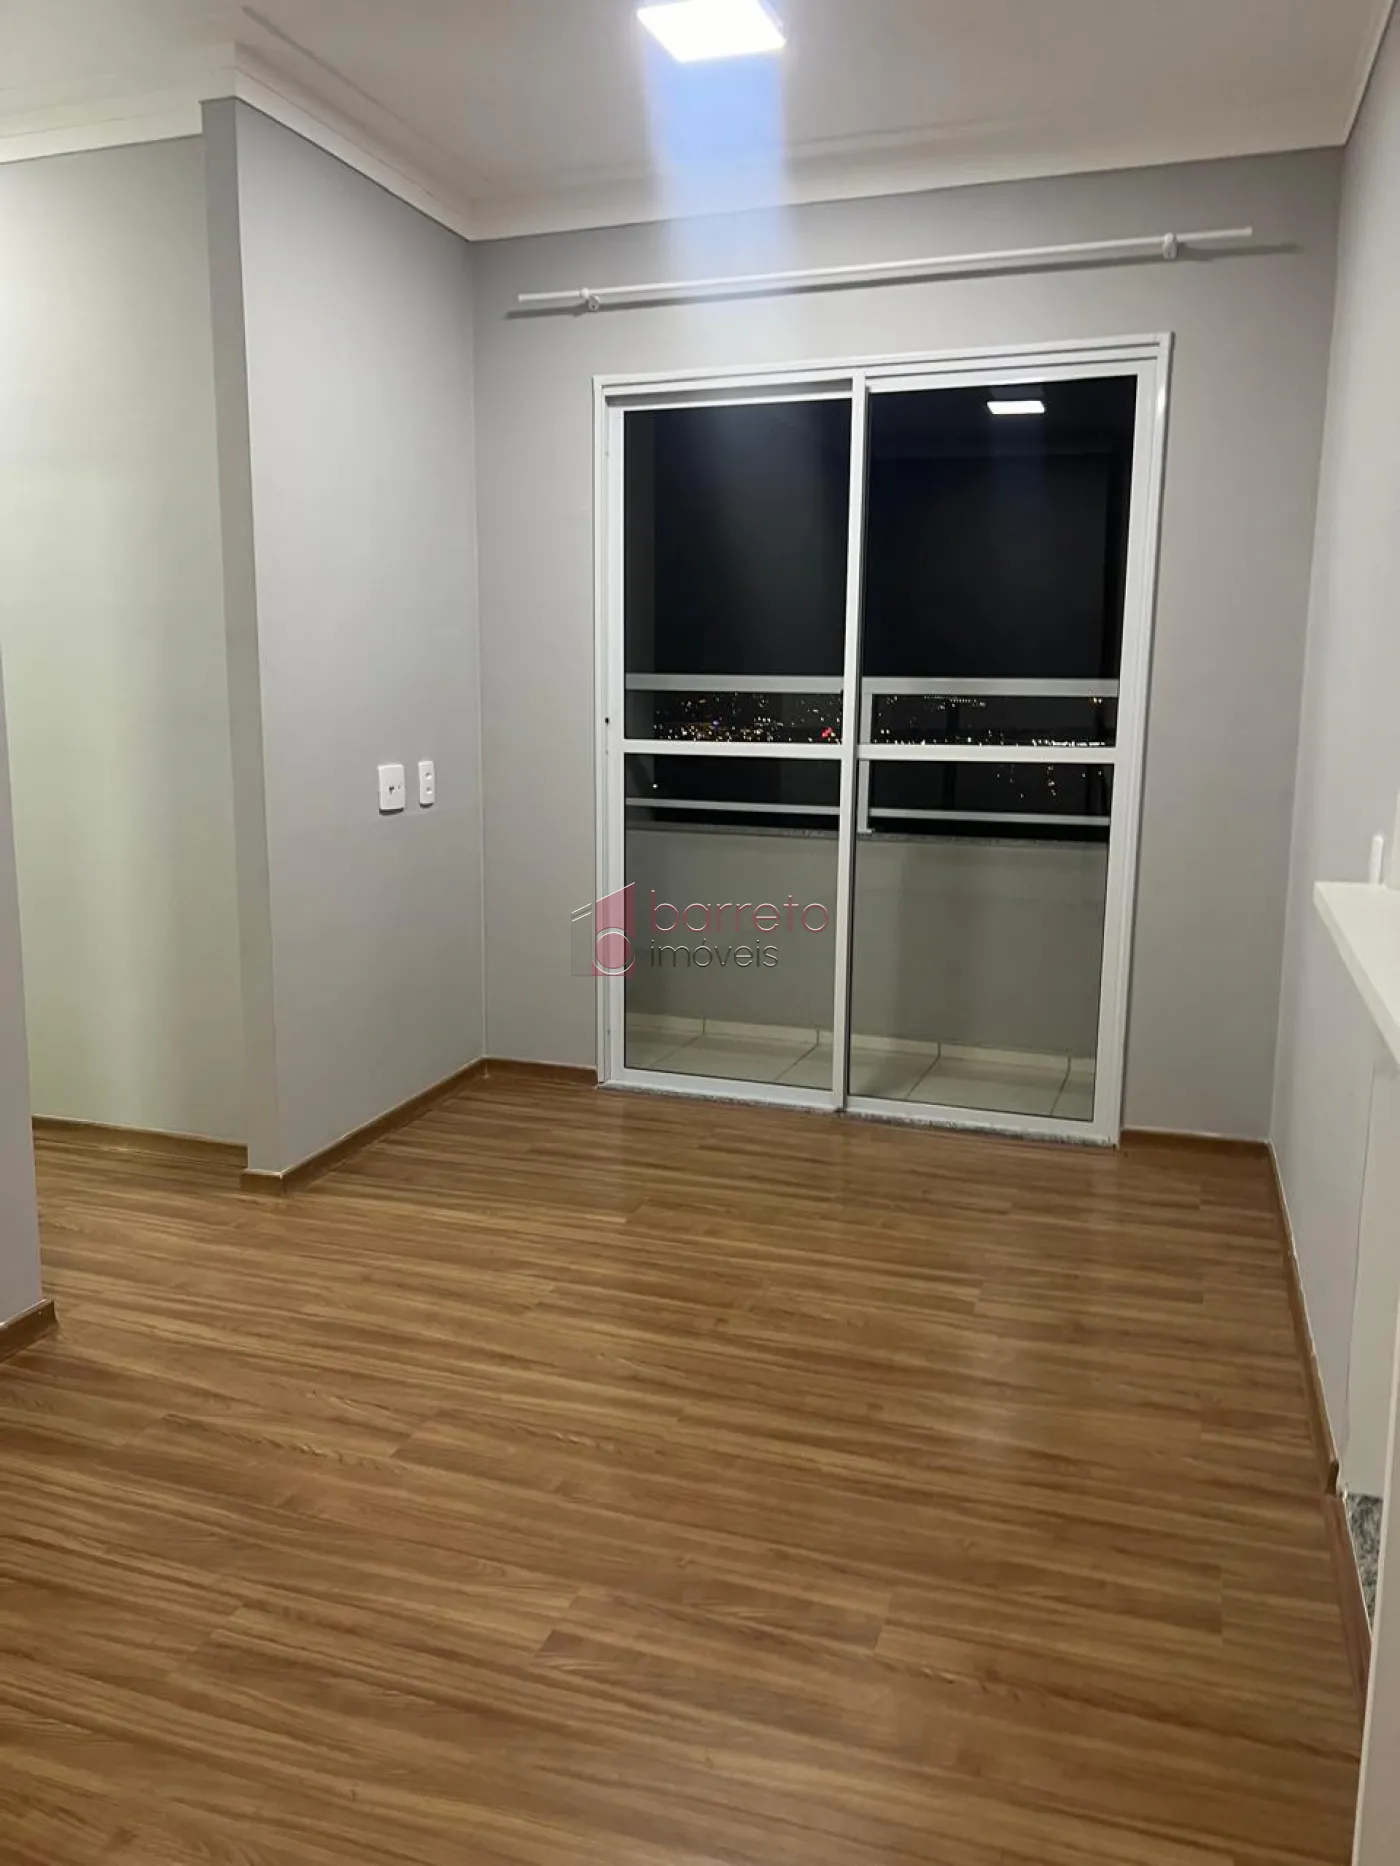 Alugar Apartamento / Padrão em Jundiaí R$ 2.500,00 - Foto 3